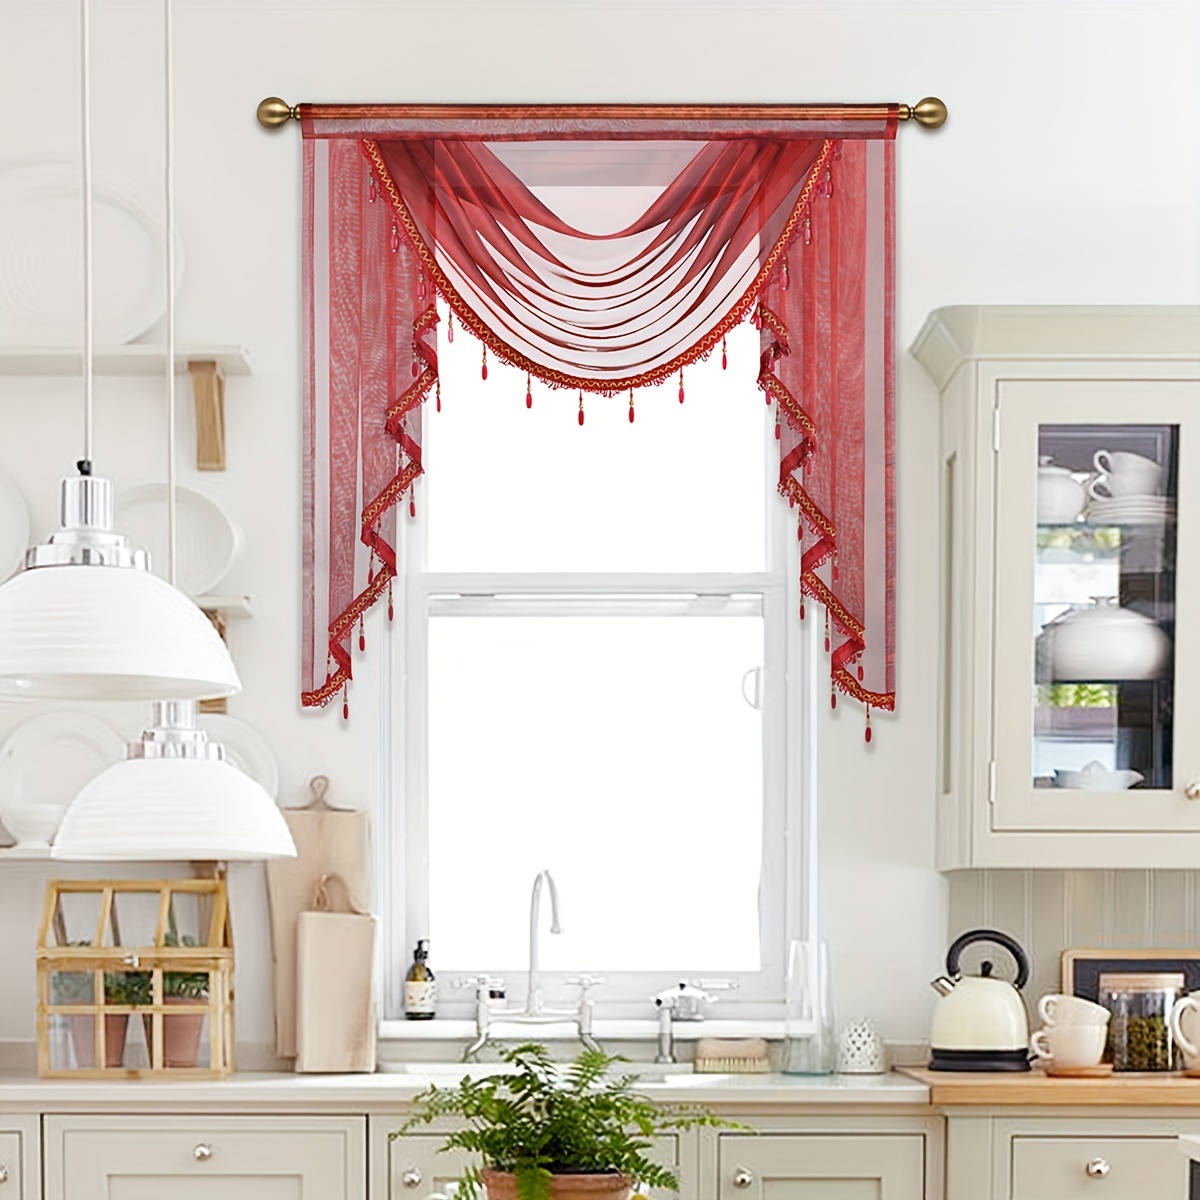  Cortinas de tul transparente para salón, dormitorio, puerta,  cocina, ventana, niños, decoración del hogar : Hogar y Cocina